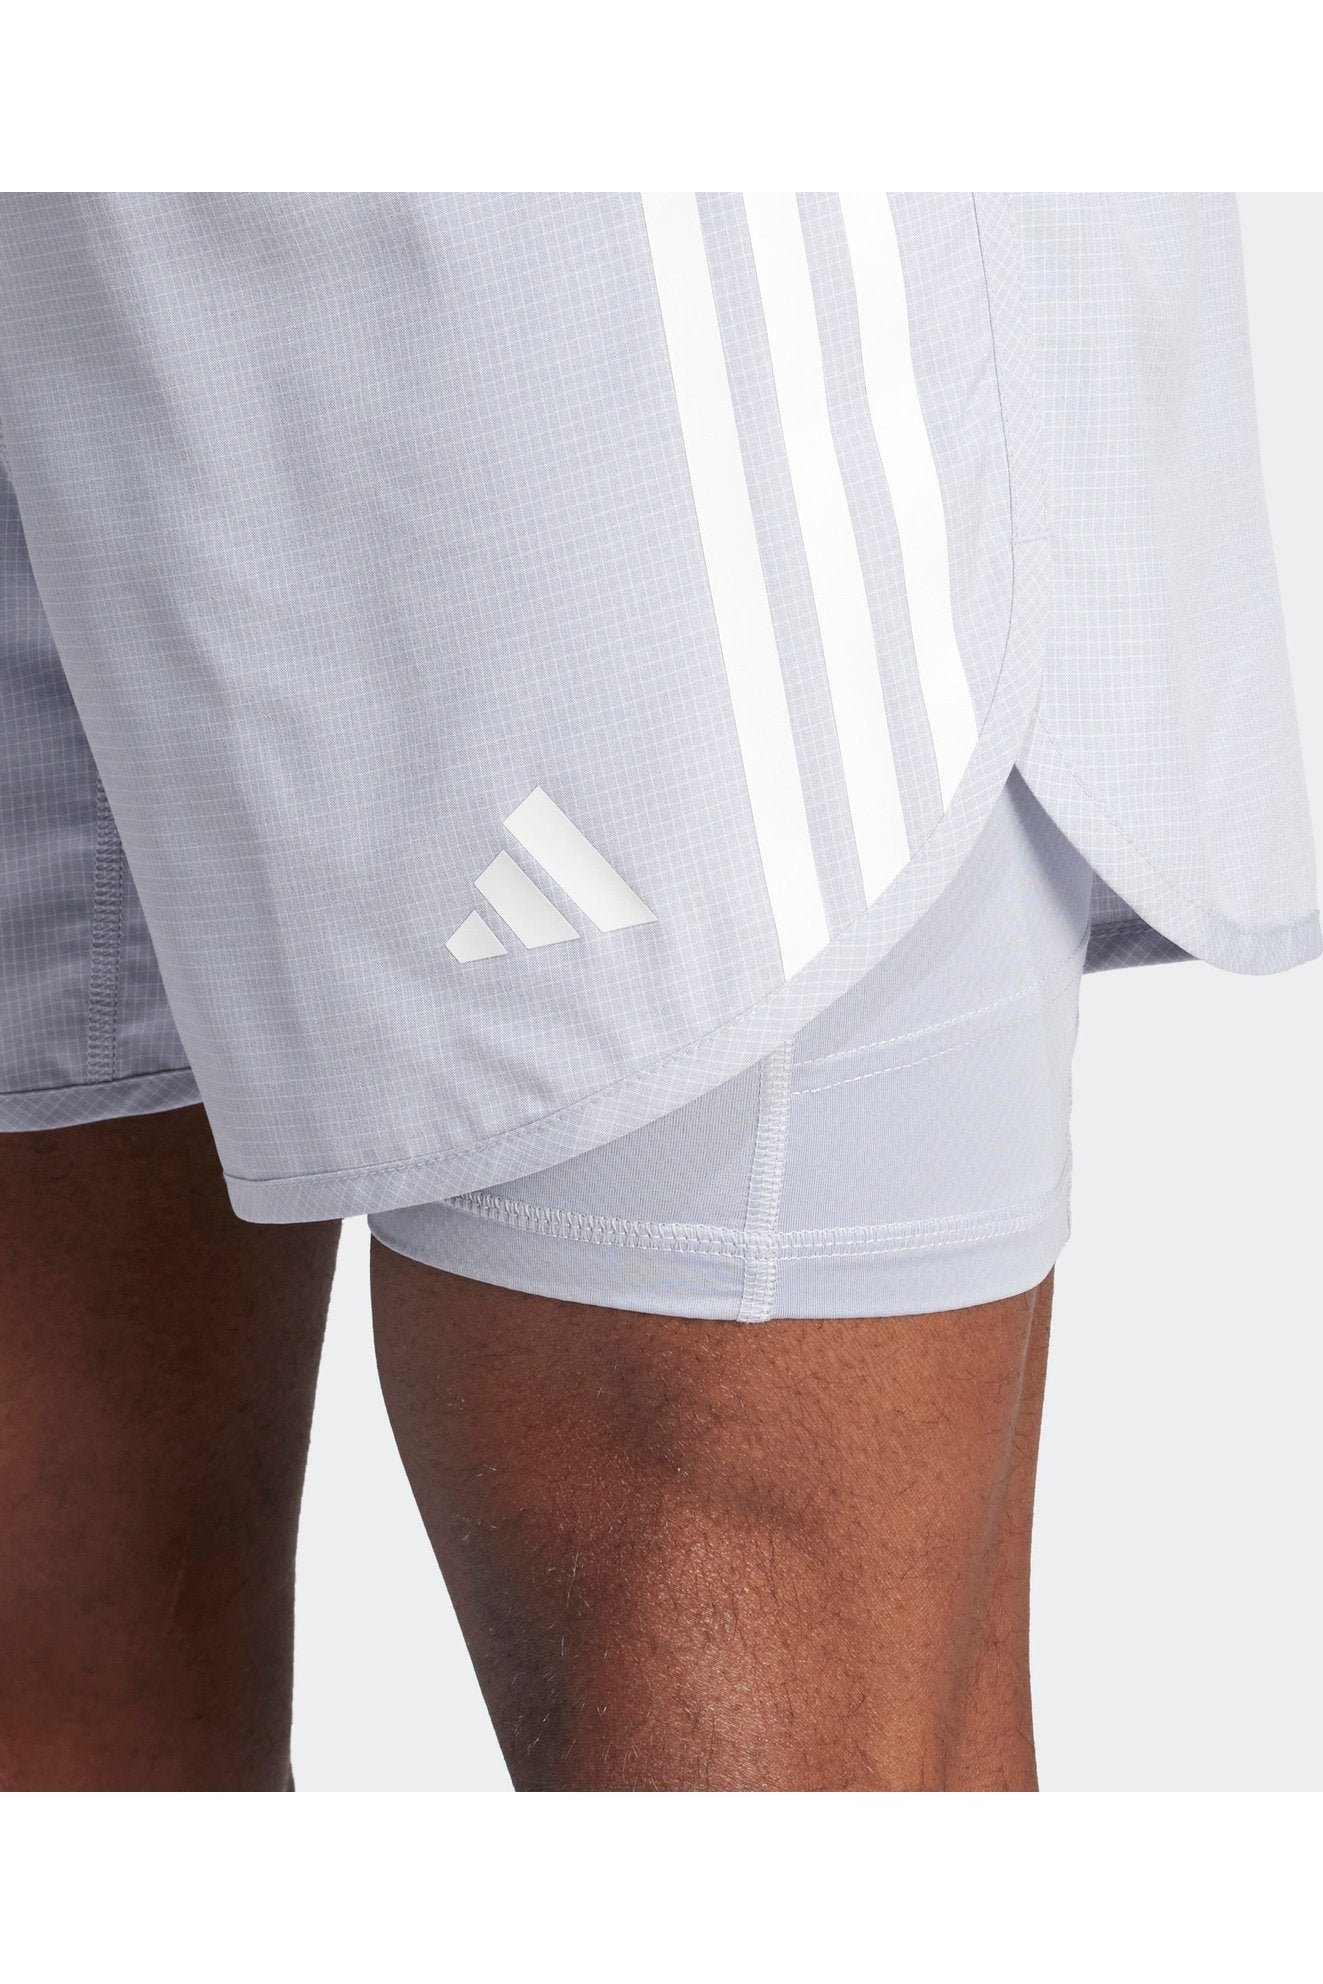 מכנסיים קצרים לגברים OWN THE RUN 3-STRIPES 2-IN-1 בצבע אפור בהיר